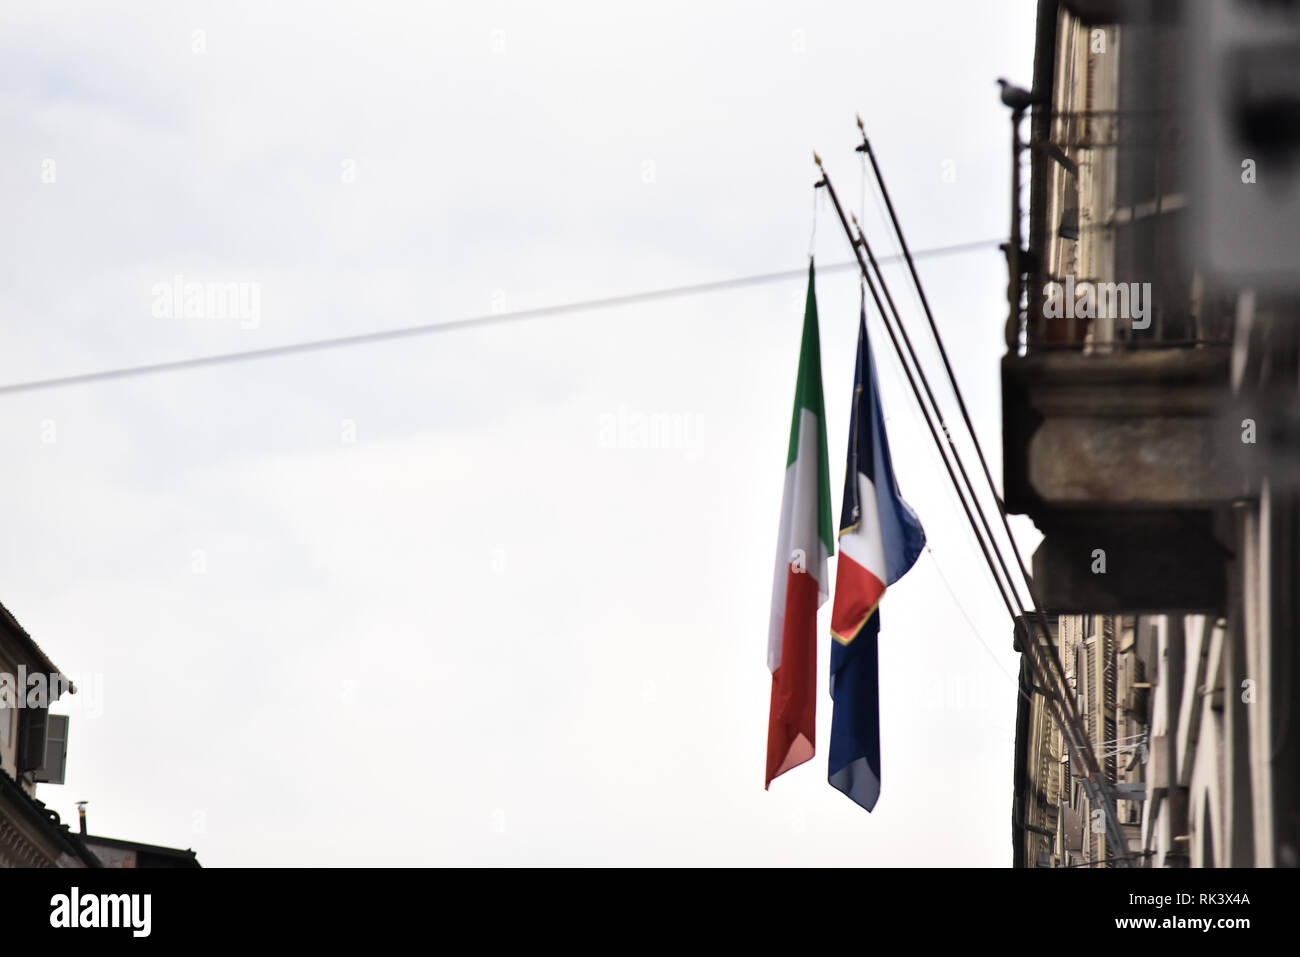 Foto LaPresse/Alberto Gandolfo 9-02-2019&# xa0;Torino(Italie) Cronaca&# x2028;Bandiera francese esposta al rettorato dell'université&# xe0 ;&# x2028 ;&# x2028;Photo LaPresse/Alberto Gandolfo 9 février 2019, Turin (Italie) News&# x2028;protestation anarchiste dans le pic:drapeau français exposés à l'université rectorat Banque D'Images